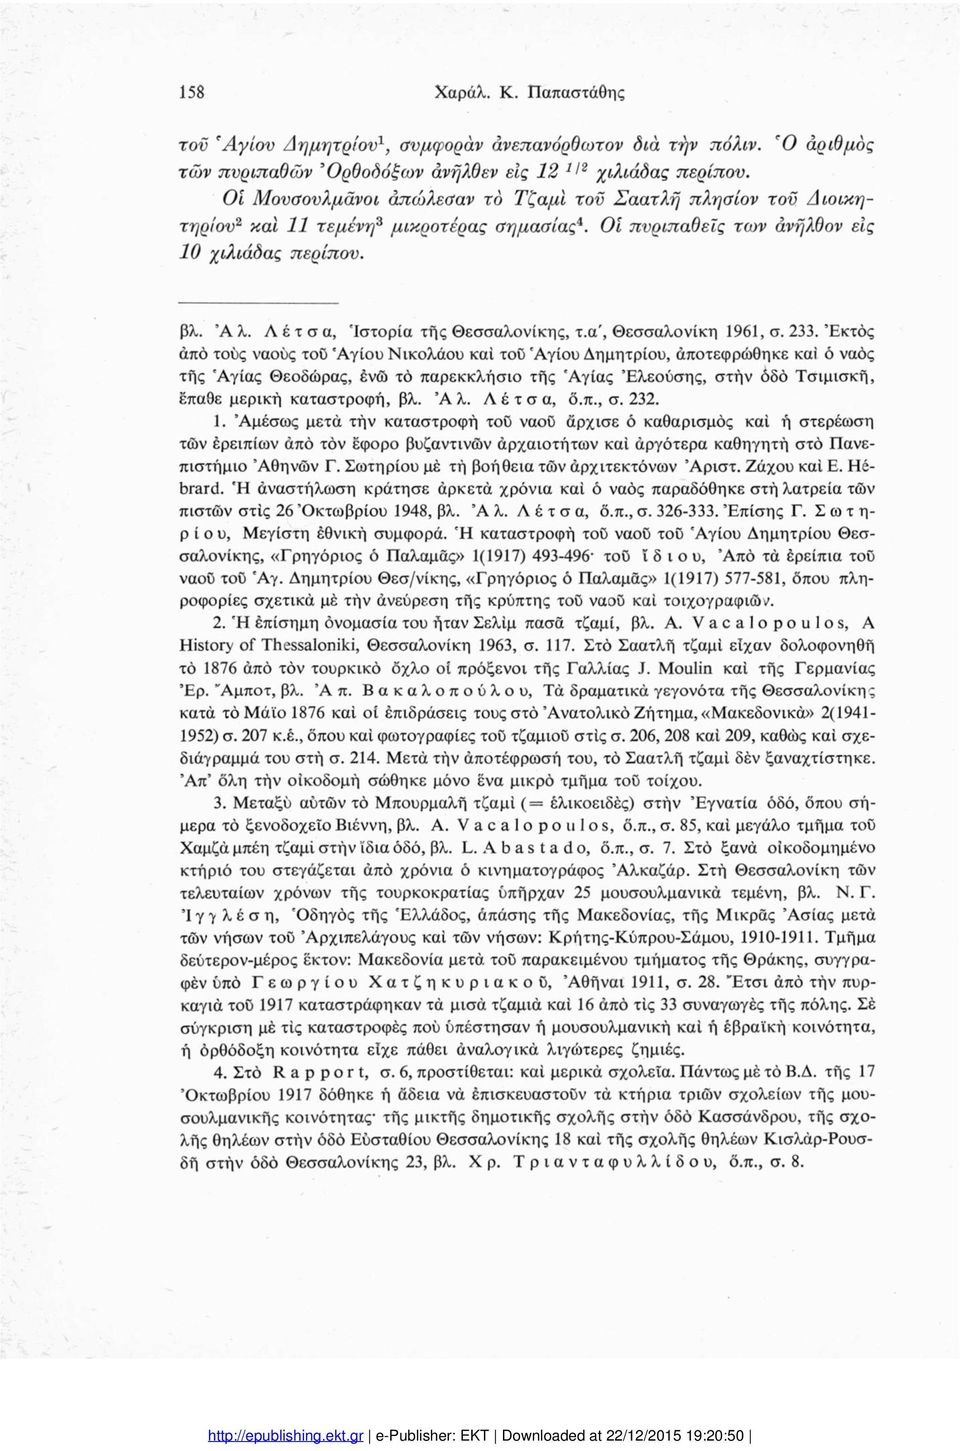 Λέτσα, 'Ιστορία τής Θεσσαλονίκης, τ.α', Θεσσαλονίκη 1961, σ. 233.